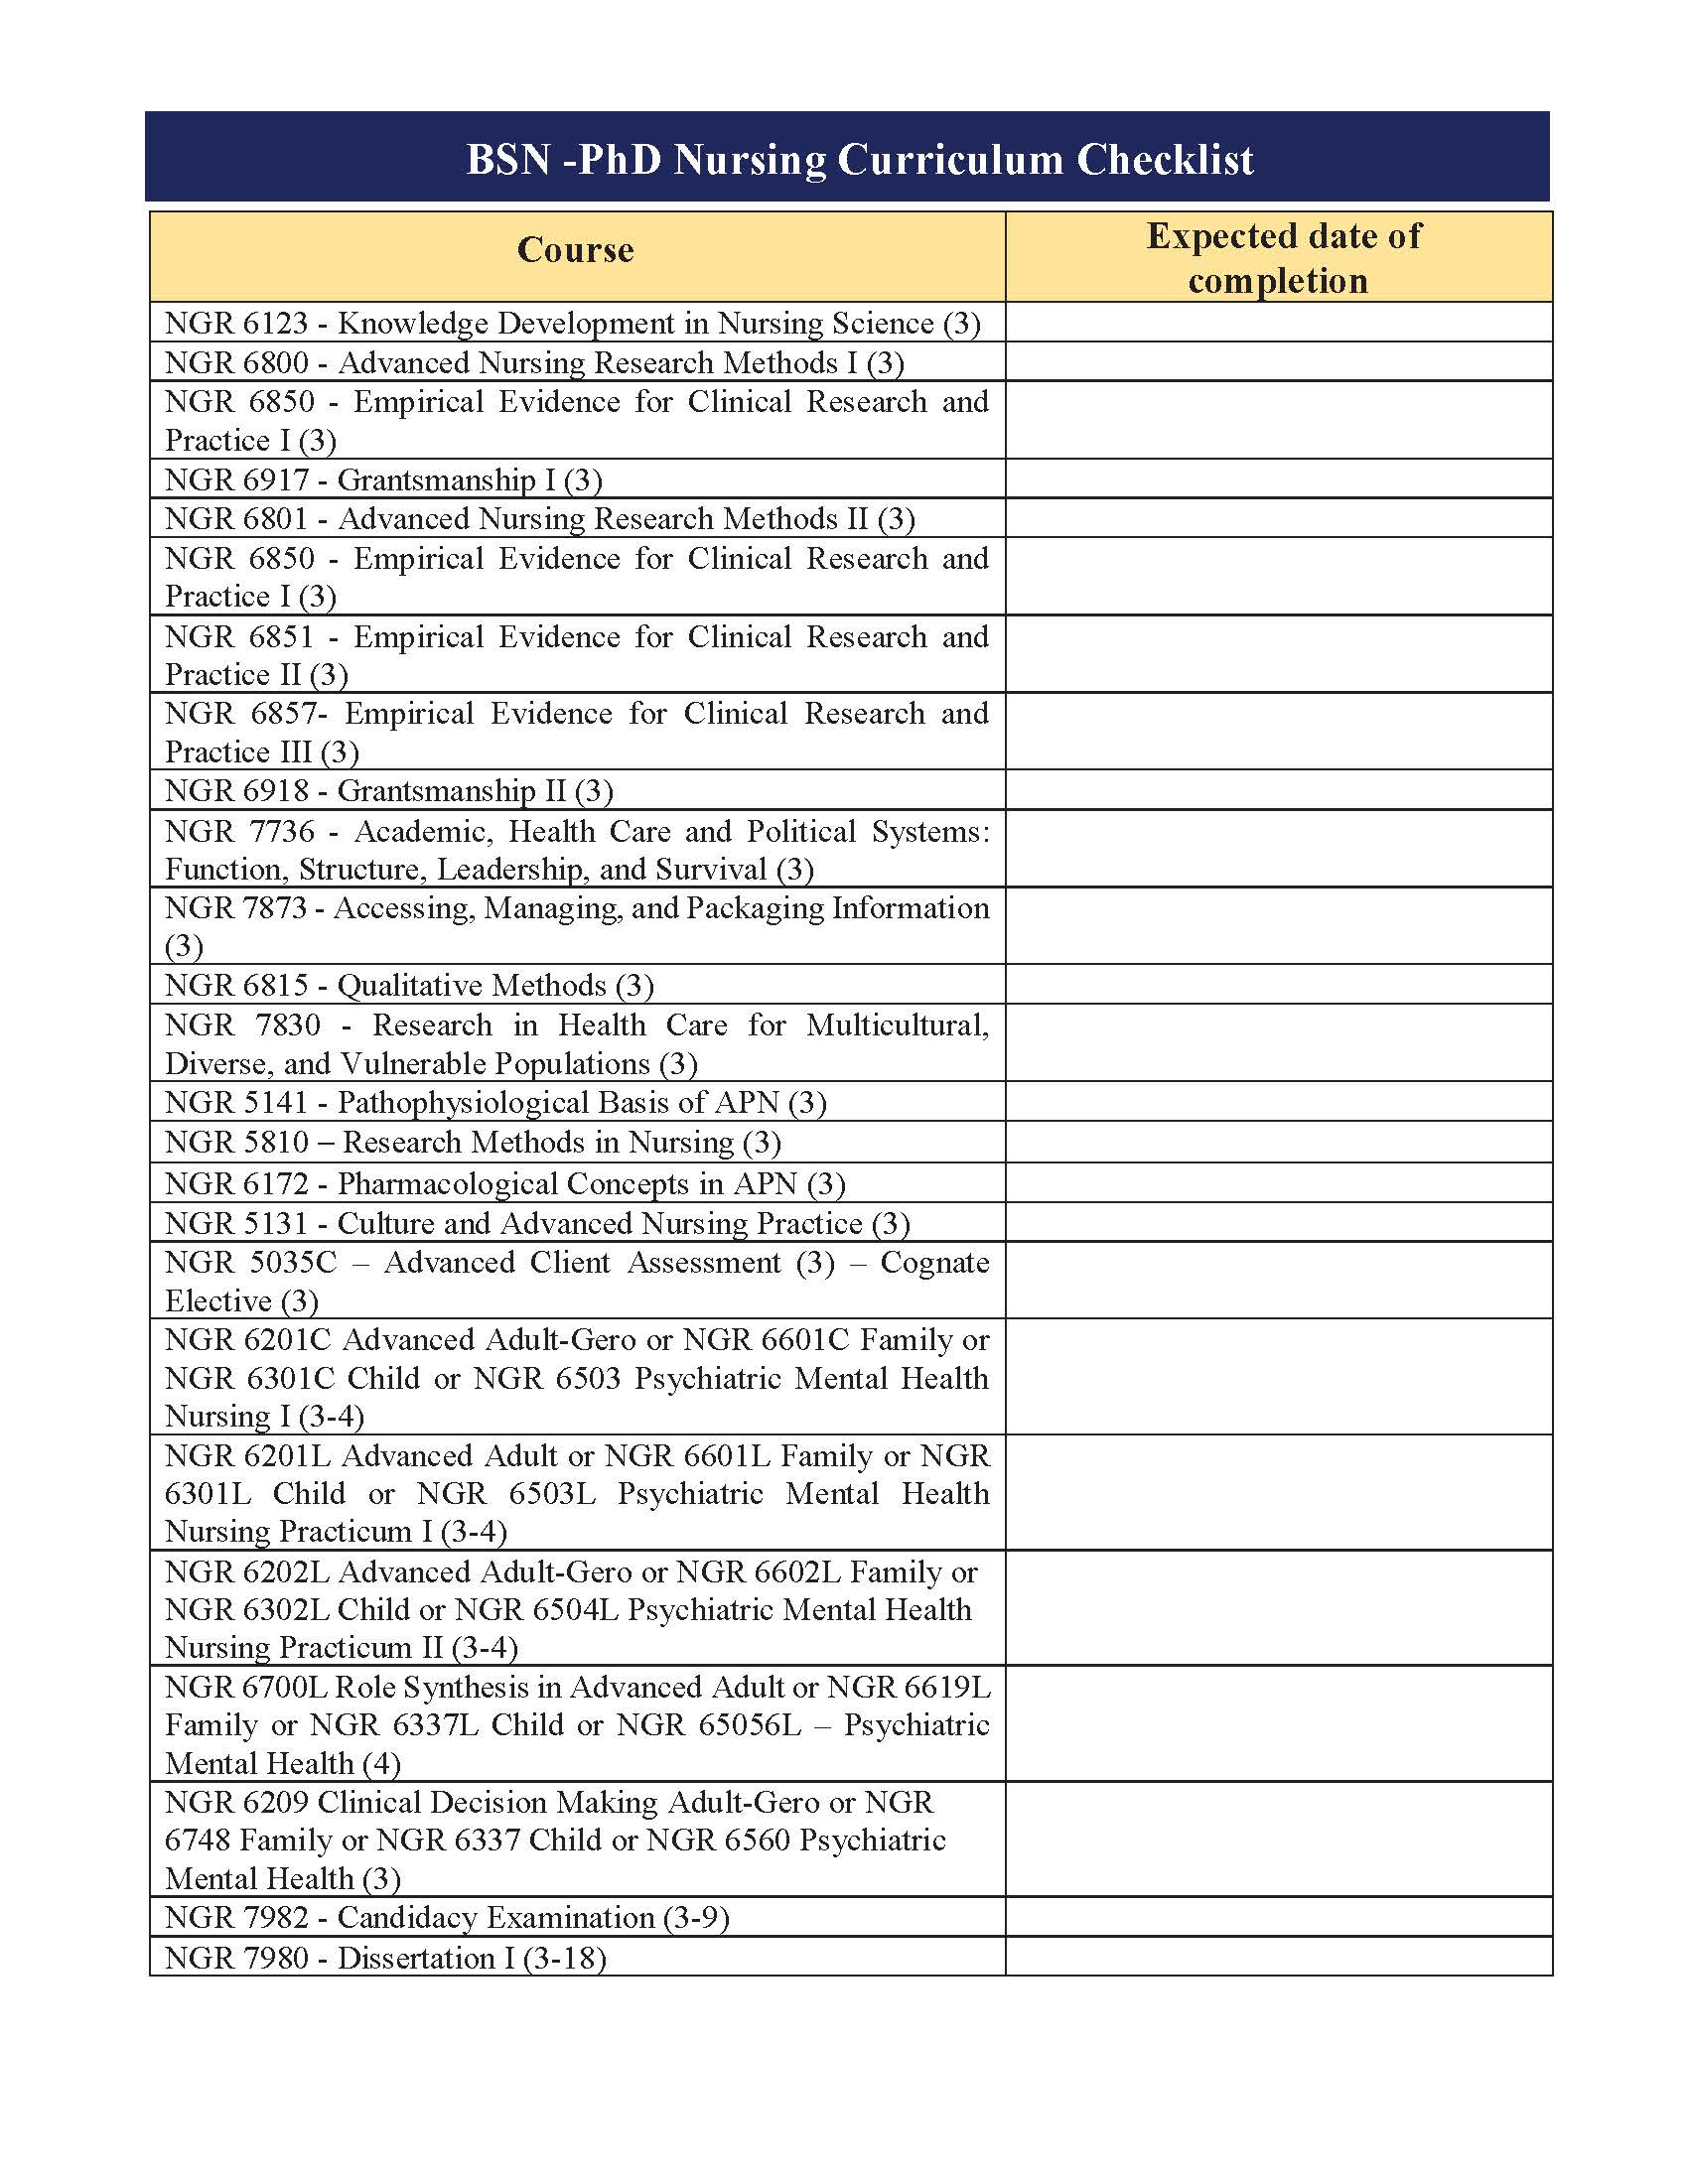 BSN-PhD Checklist